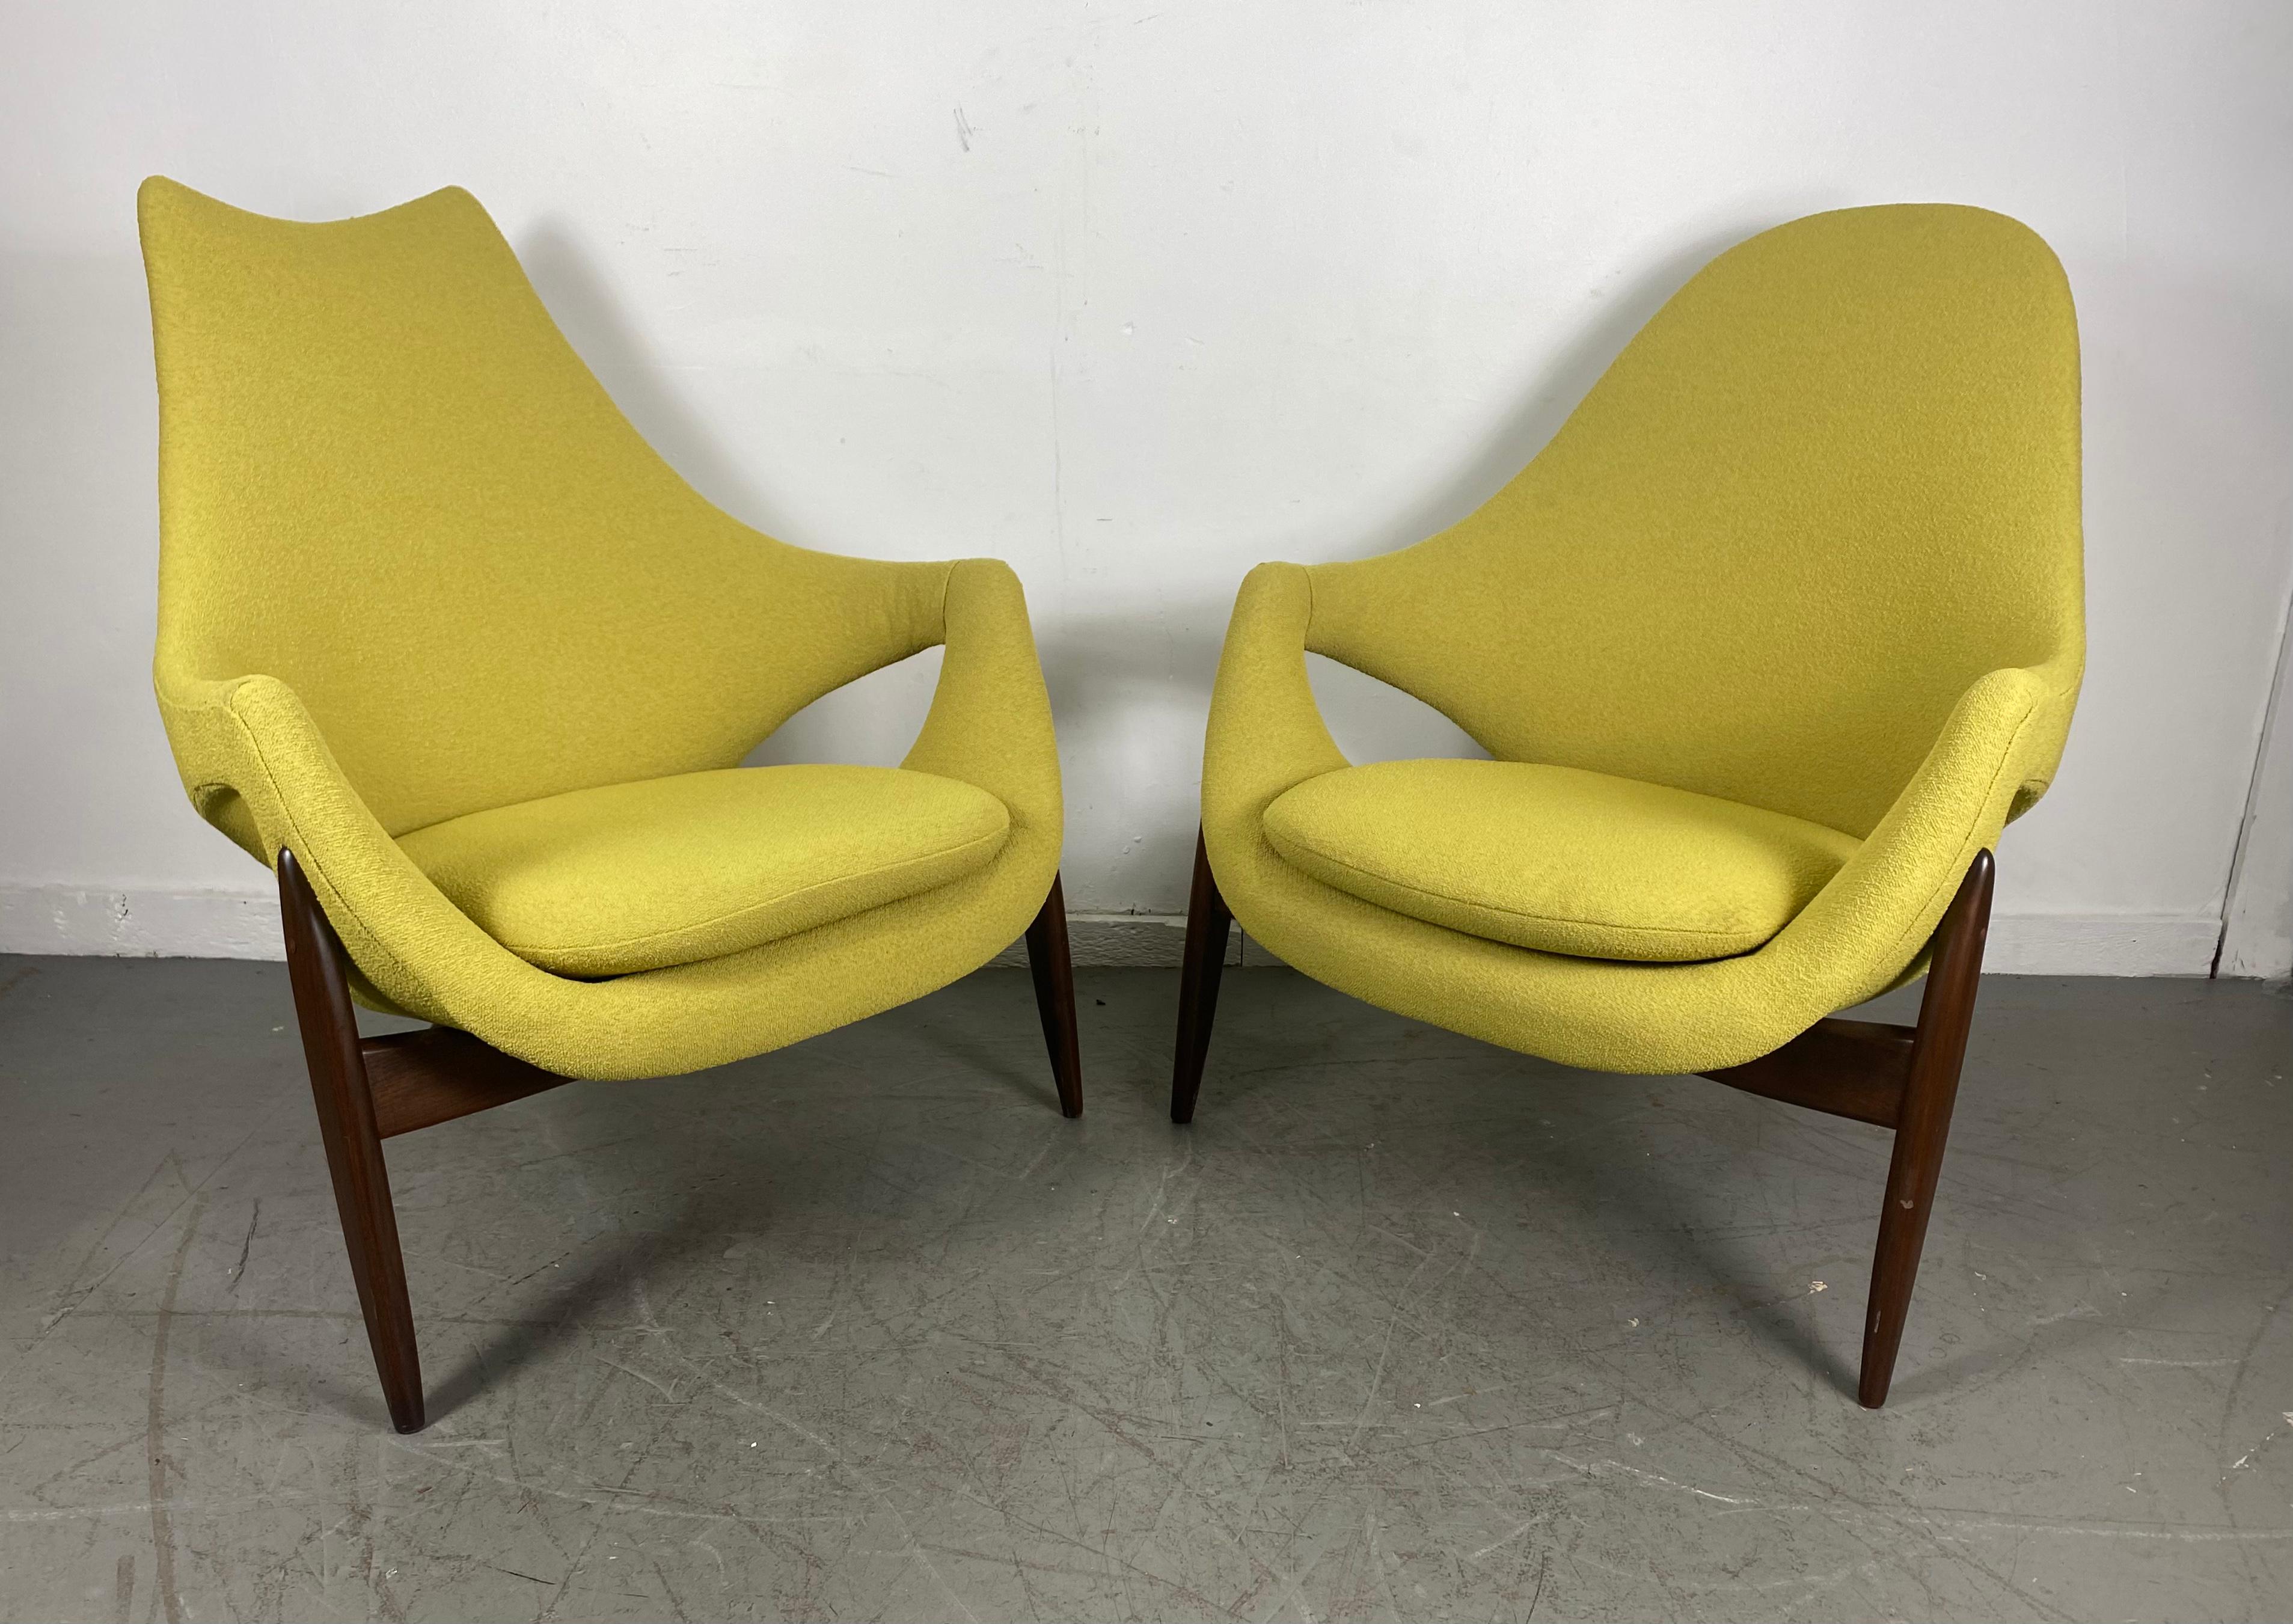 Mid-20th Century Rare Modernist Lounge Chairs by Luigi Tiengo for Cimon, Montréal, 1963